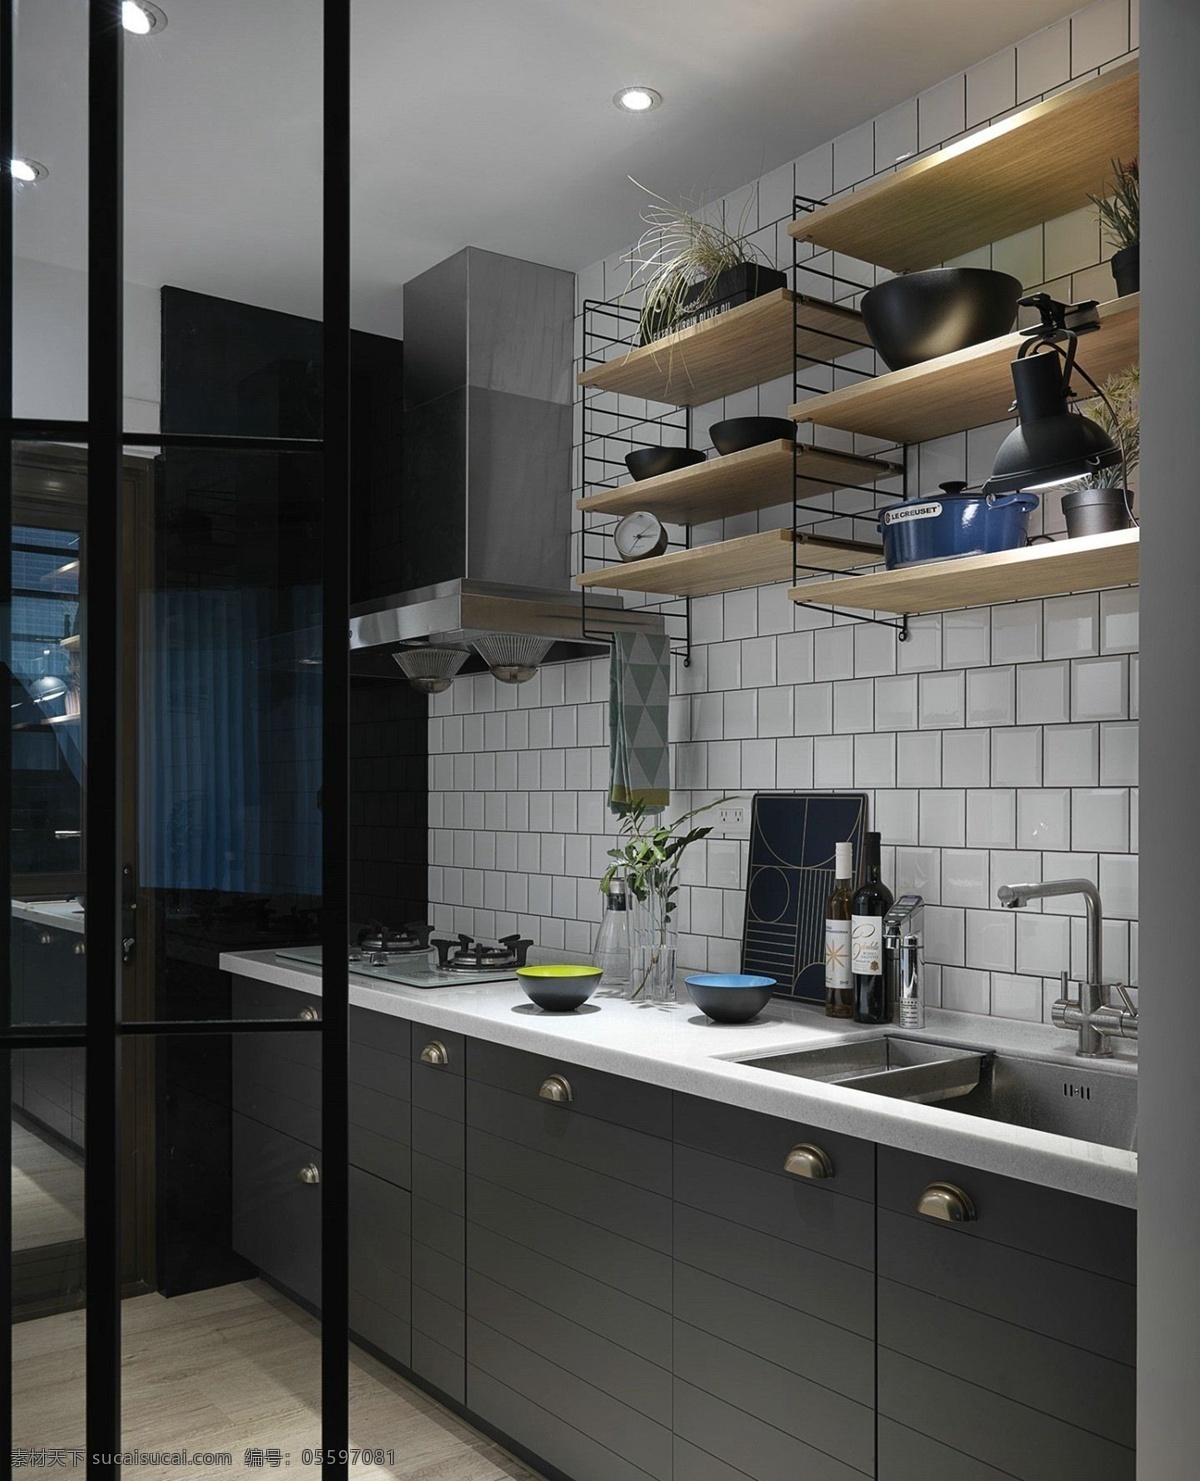 简约 经济型 厨房 置物架 装修 效果图 白色射灯 方形吊顶 灰色橱柜 灰色墙壁 洗手盆